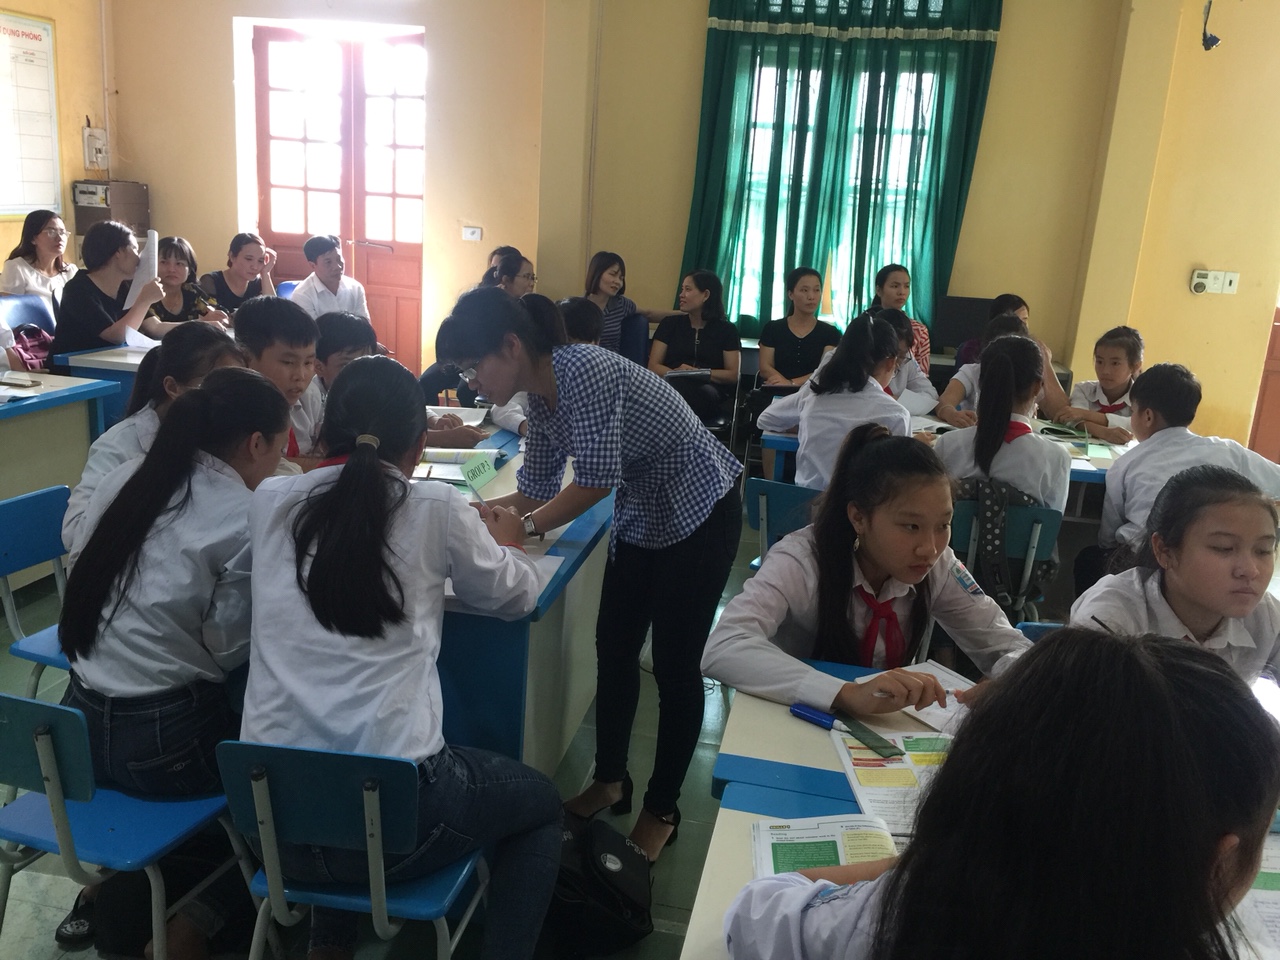 Cô giáo Mạc Thị Hương đang hướng dẫn HS thảo luận nhóm.